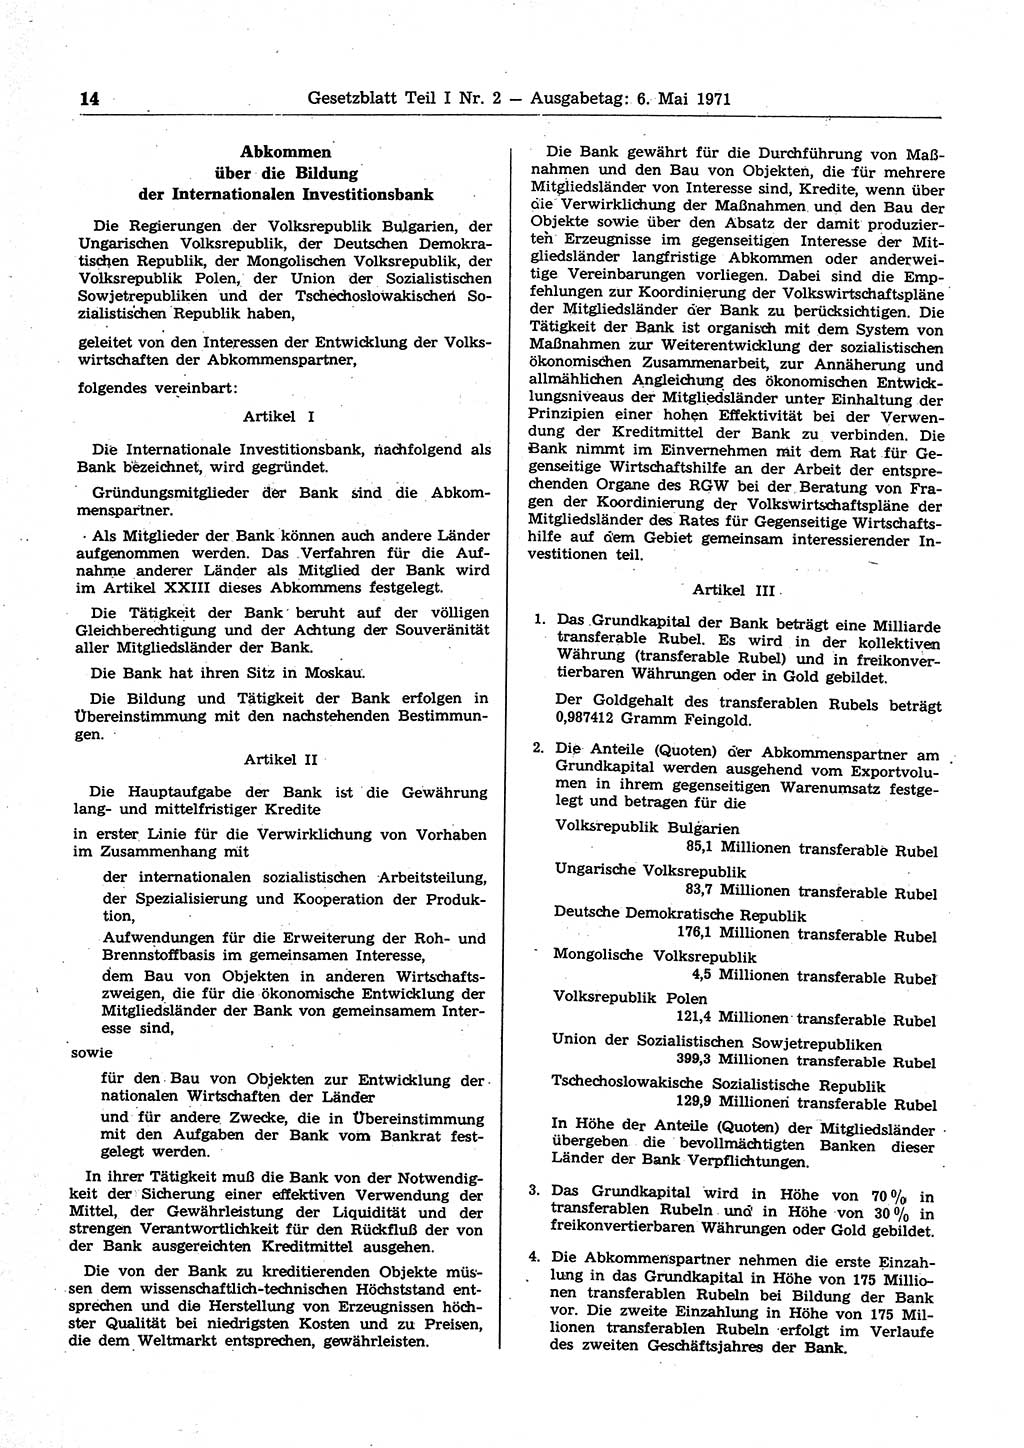 Gesetzblatt (GBl.) der Deutschen Demokratischen Republik (DDR) Teil Ⅰ 1971, Seite 14 (GBl. DDR Ⅰ 1971, S. 14)